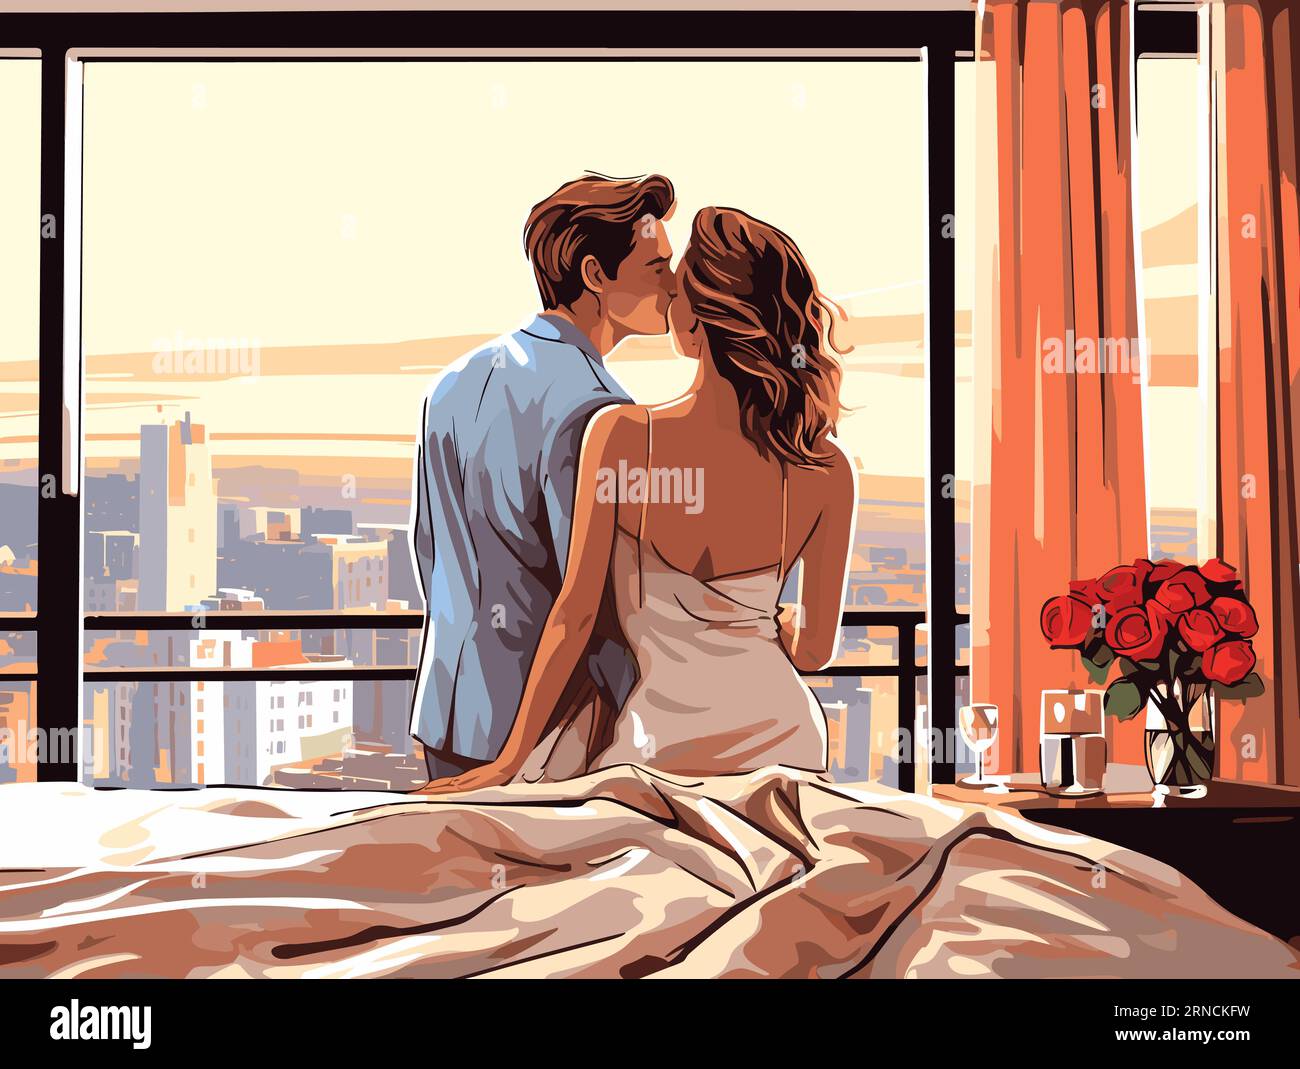 Pittura di coppia in luna di miele baci, nello stile di Superflat Style, paesaggi urbani fotorealistici, Toni caldi, Windows Vista, contorni eleganti Illustrazione Vettoriale